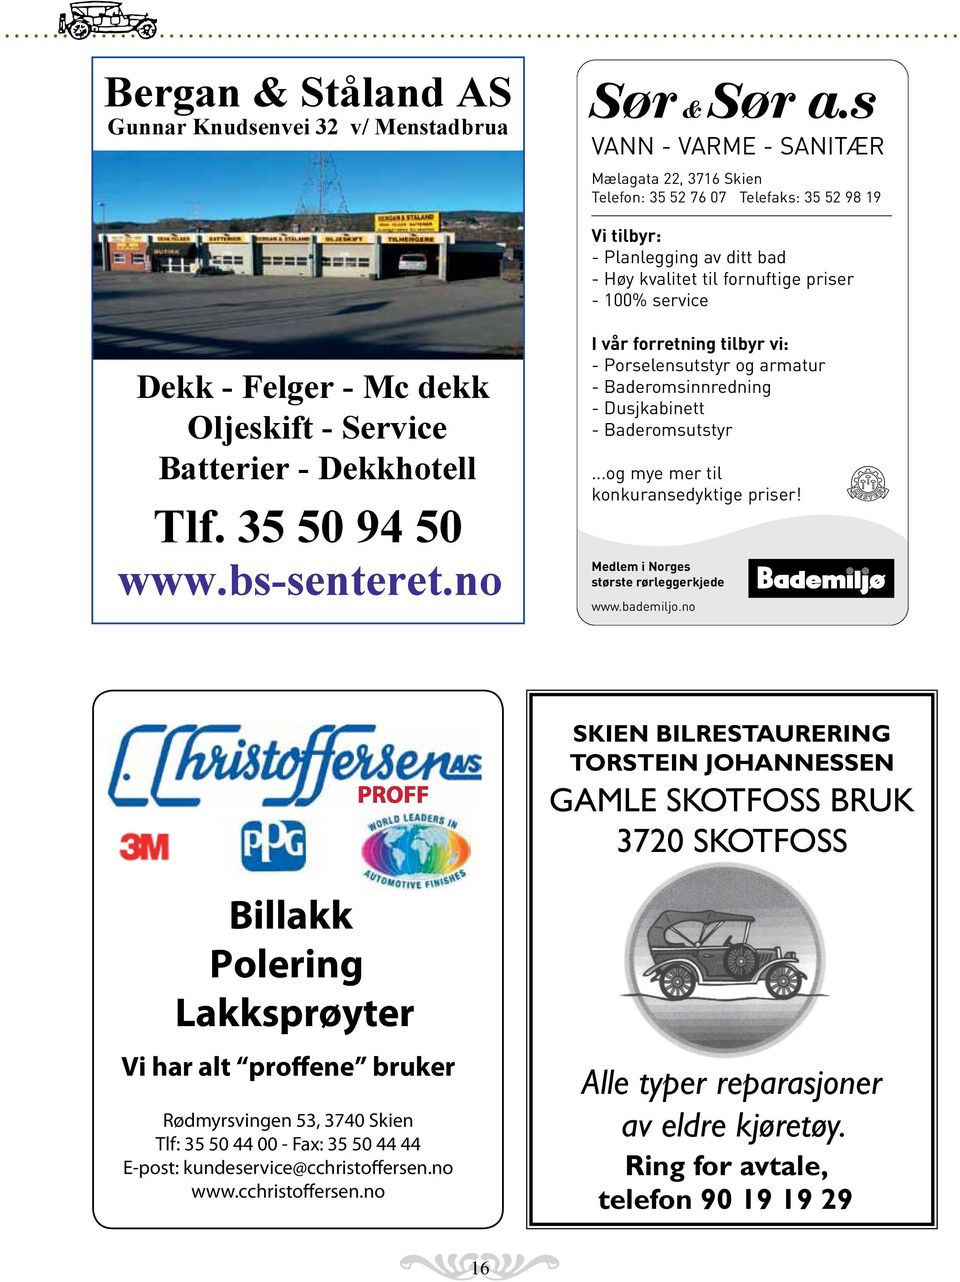 dekk Oljeskift - Service Batterier - Dekkhotell Tlf. 35 50 94 50 www.bs-senteret.no I vår forretning tilbyr vi: - Porselensutstyr og armatur - Baderomsinnredning - Dusjkabinett - Baderomsutstyr.